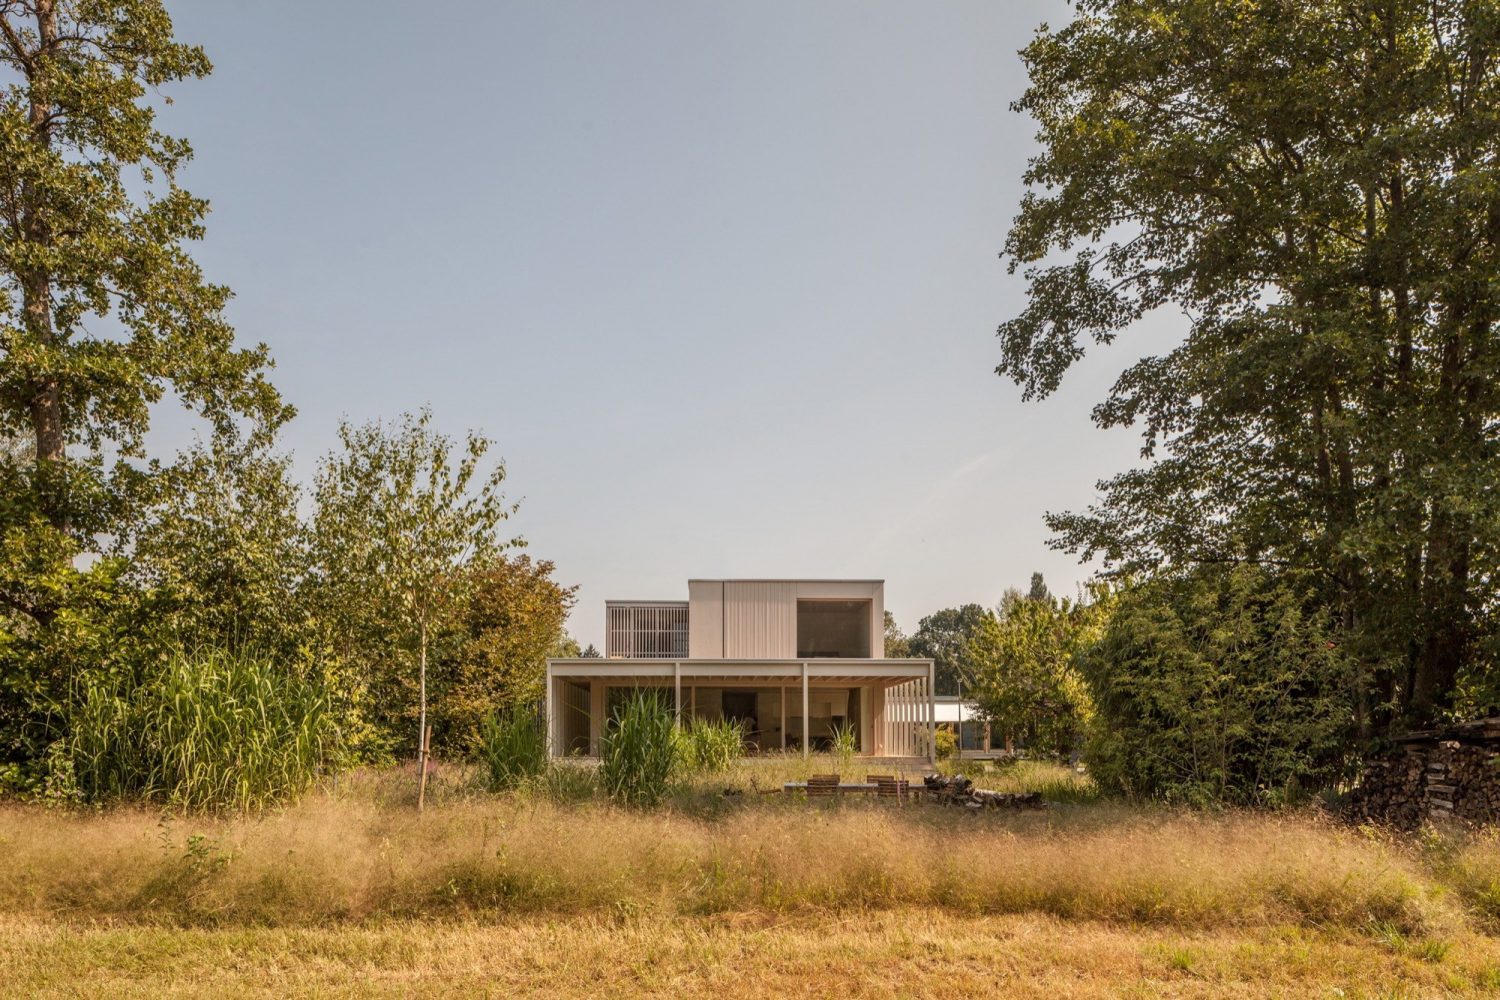 House at Lake Biel by Markus Schietsch Architekten